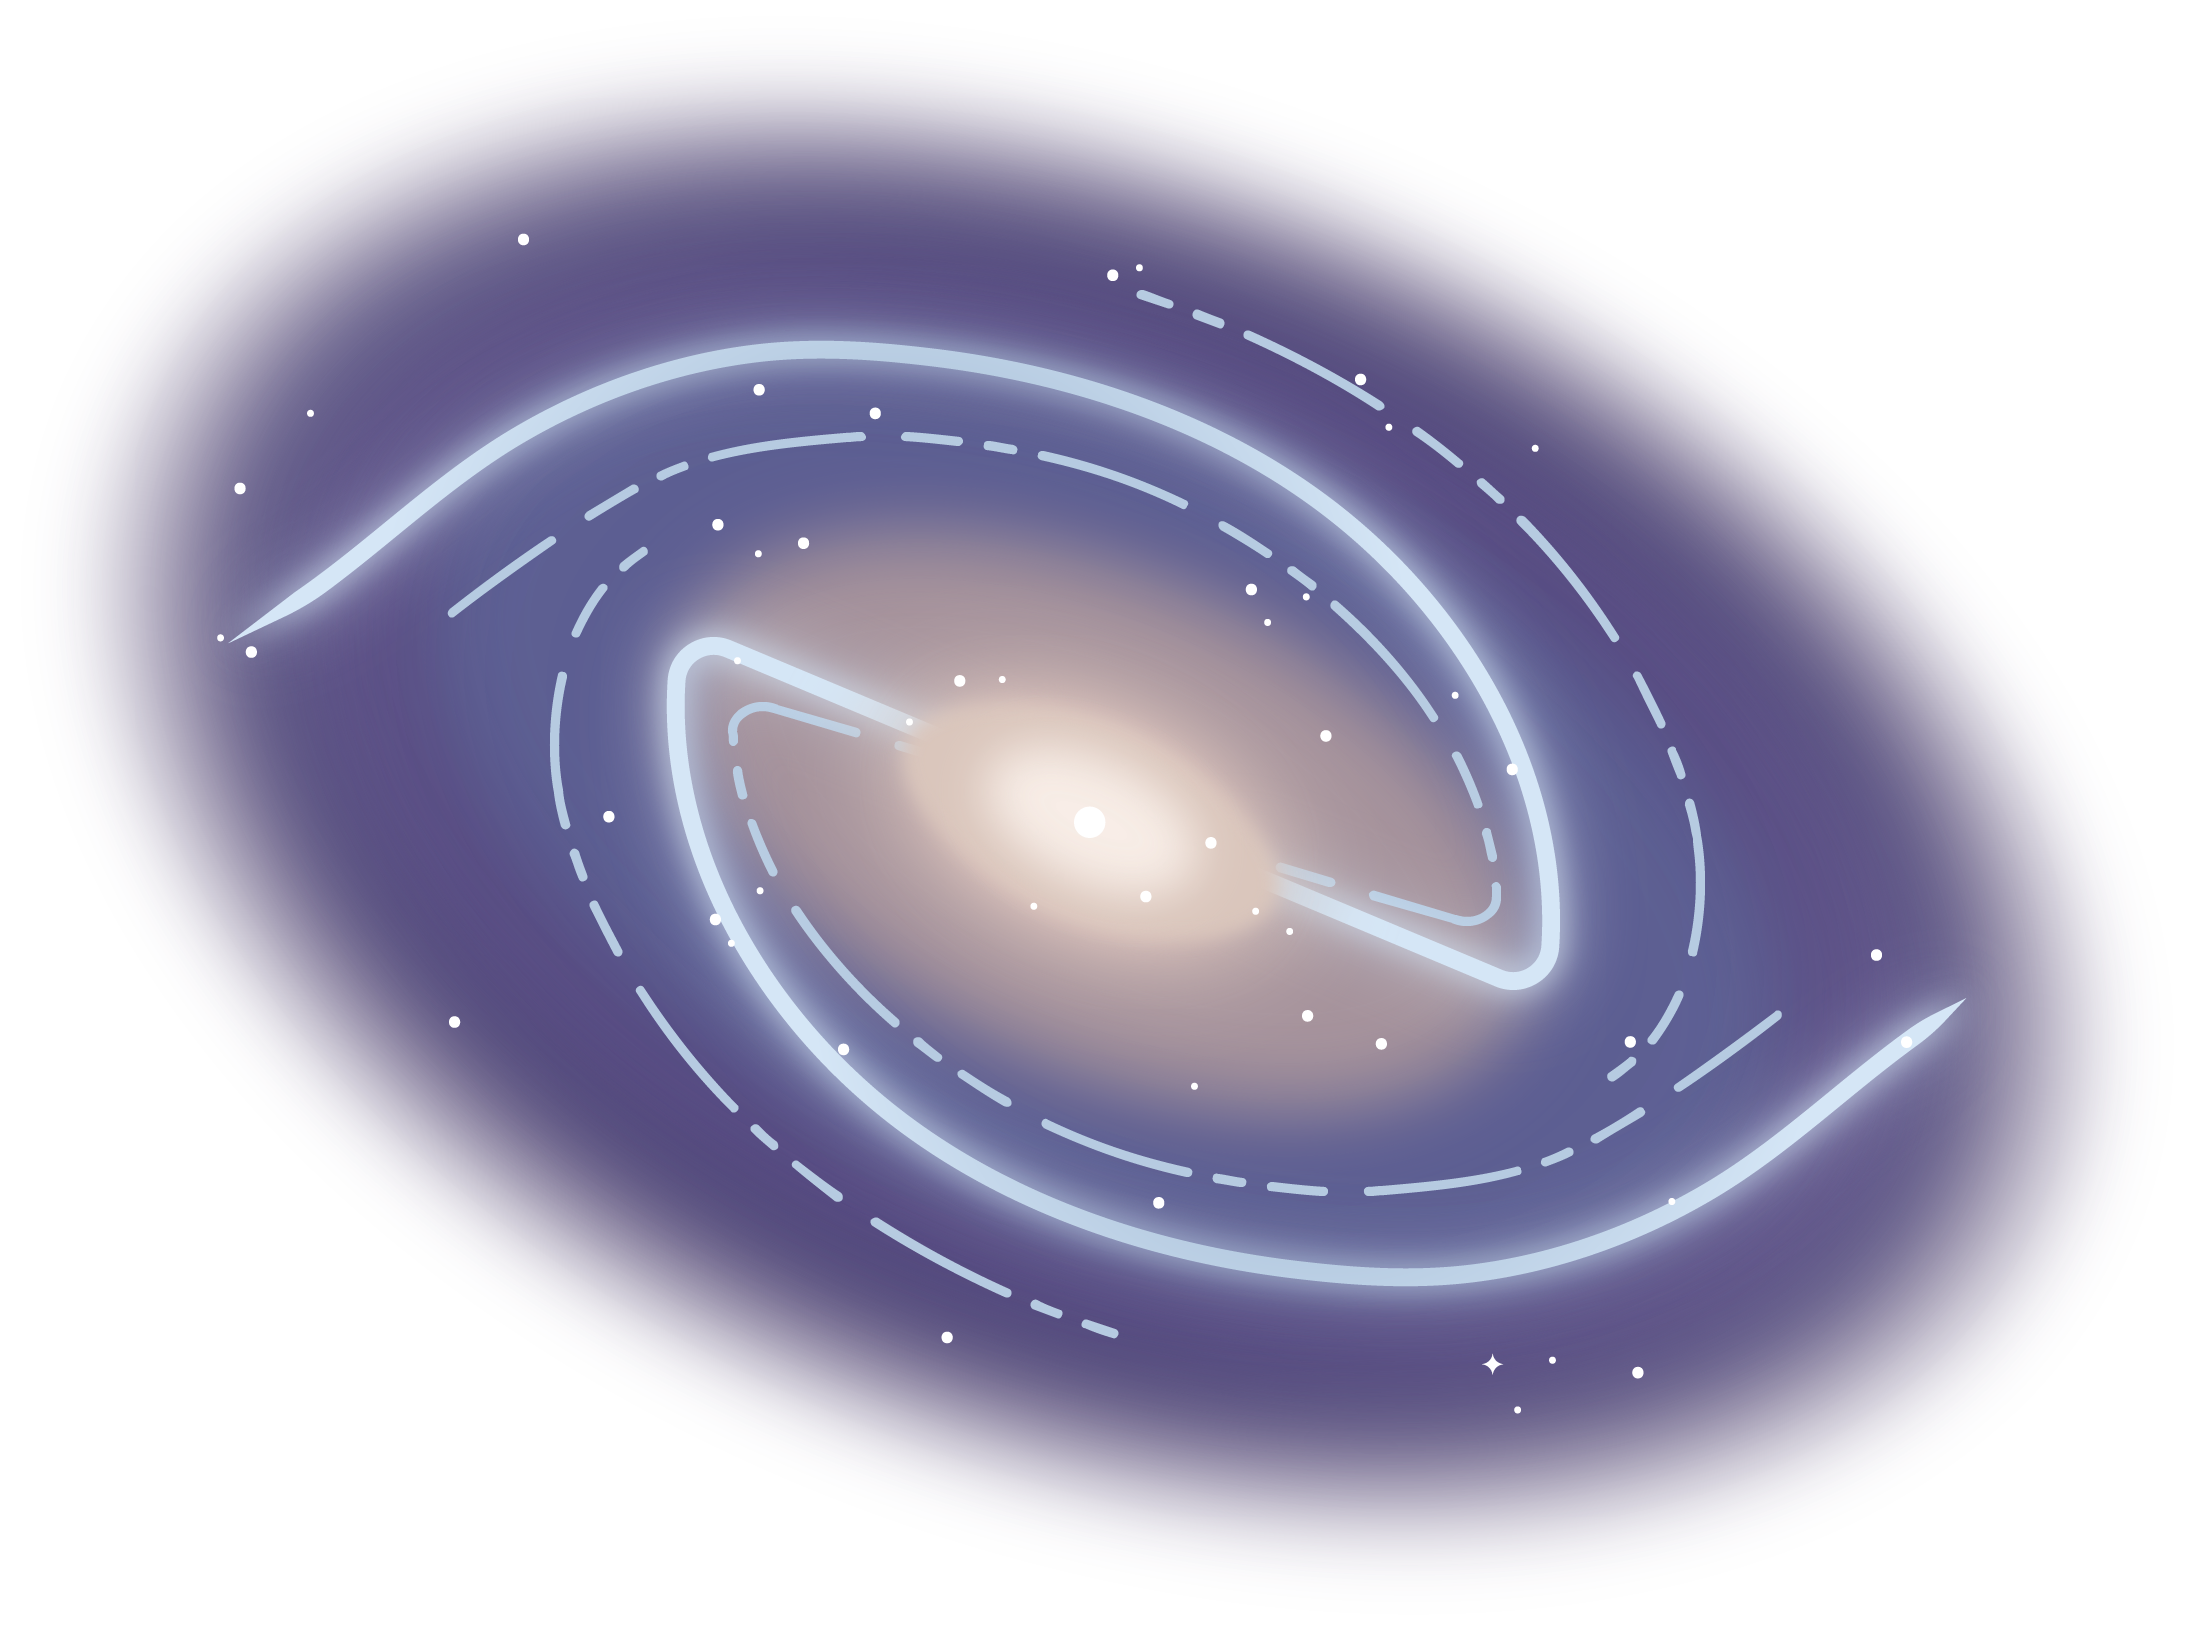 barred lenticular galaxy